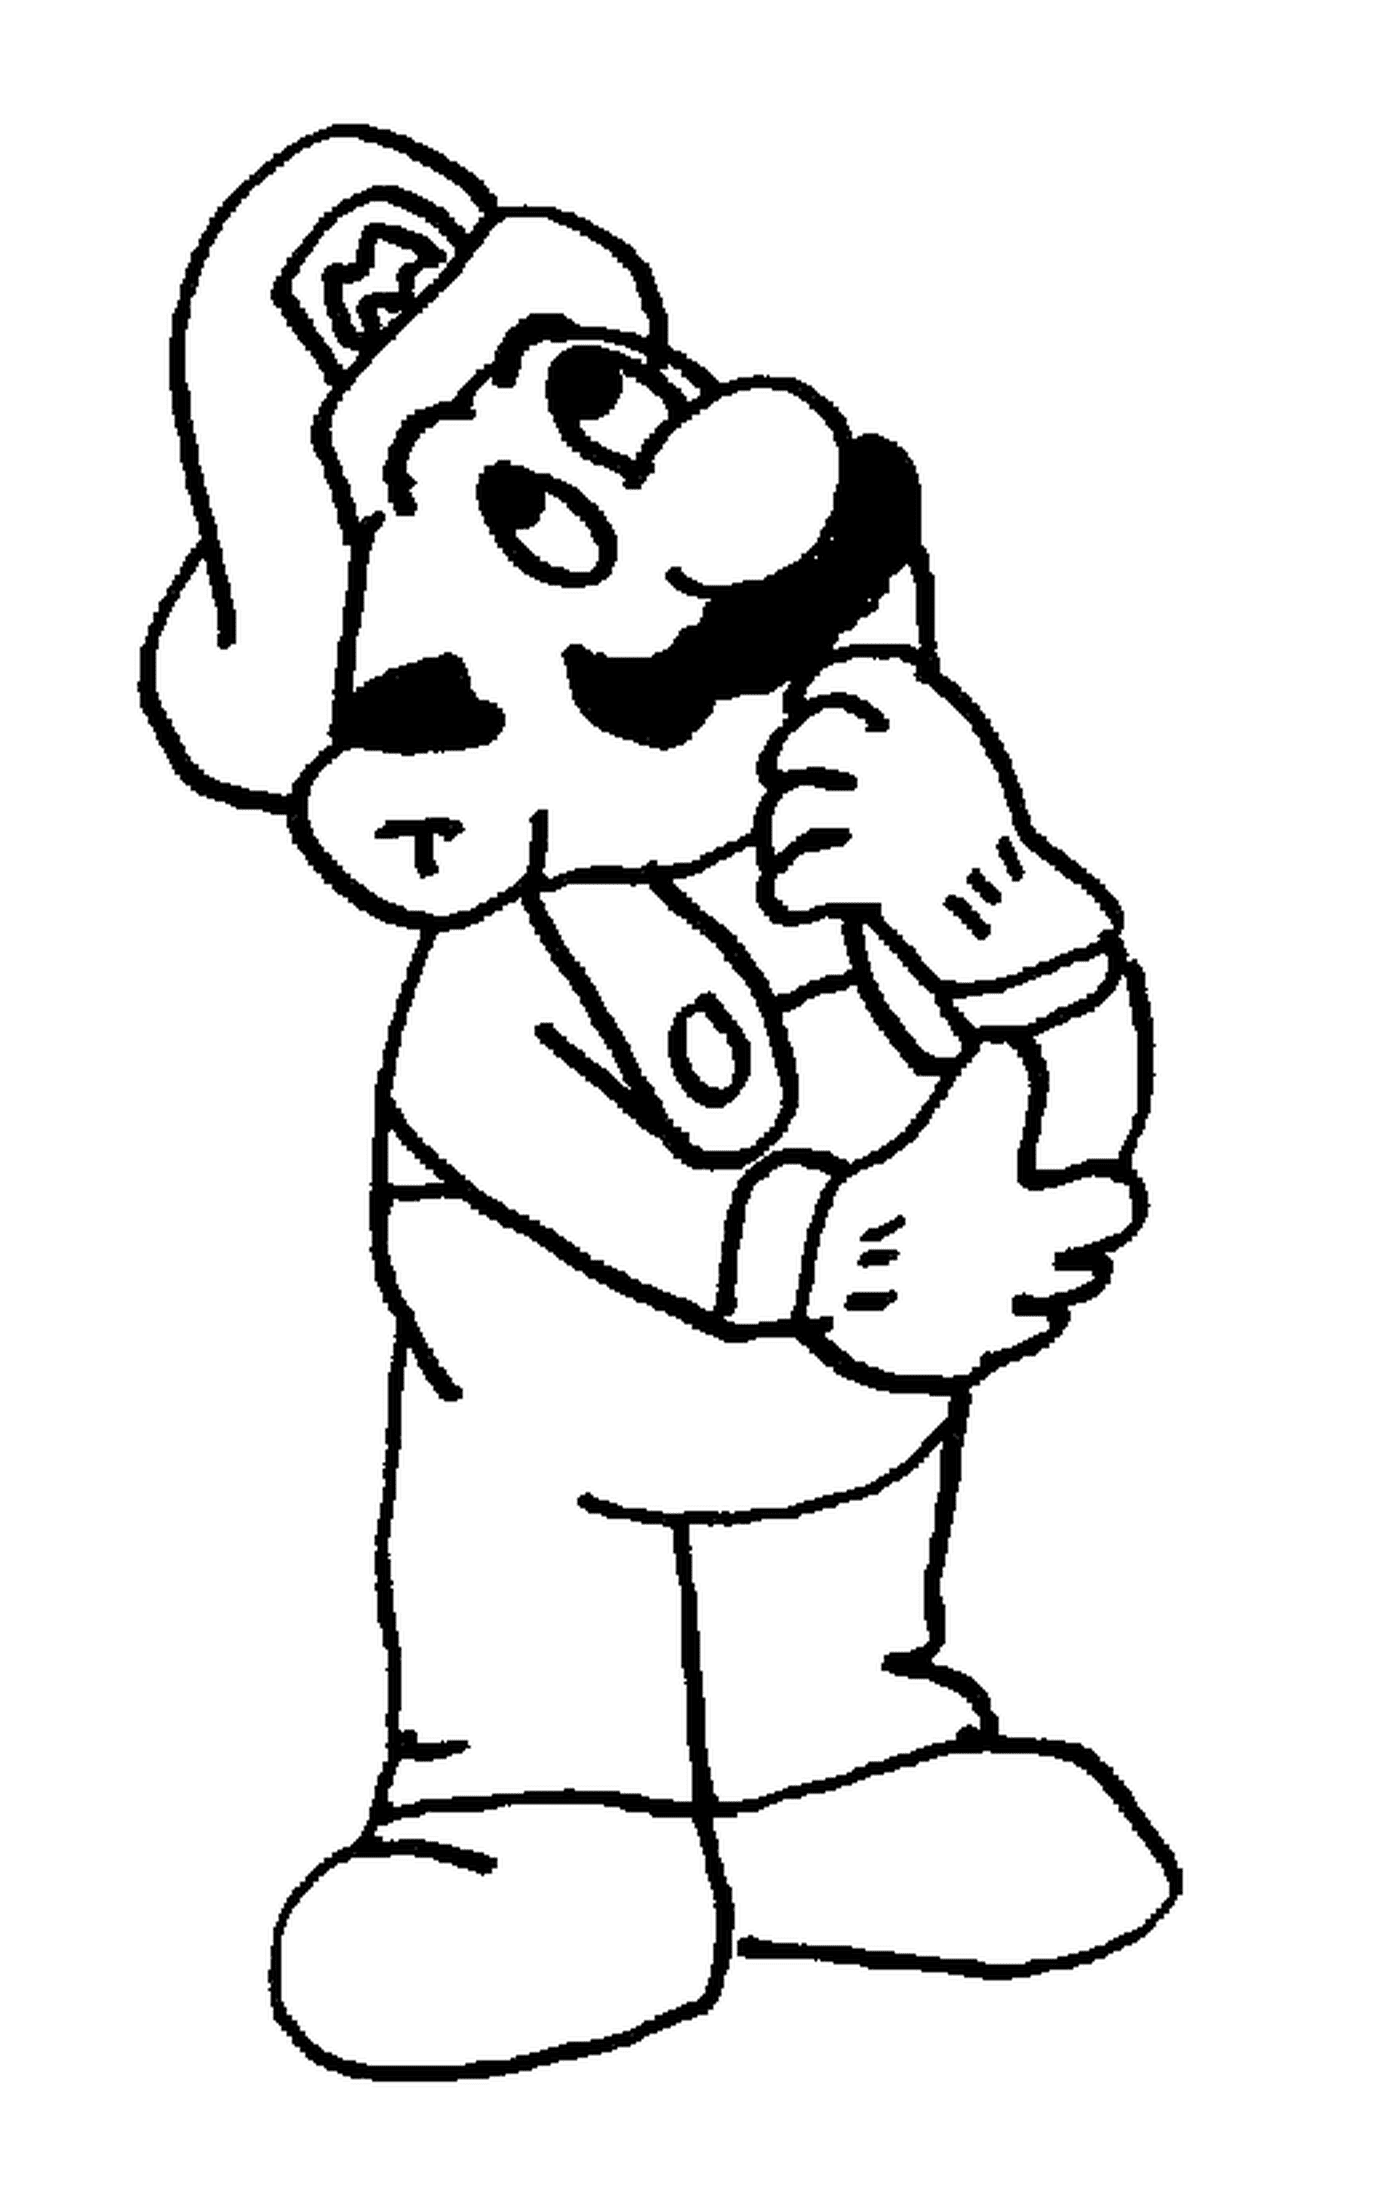 Mario songeur